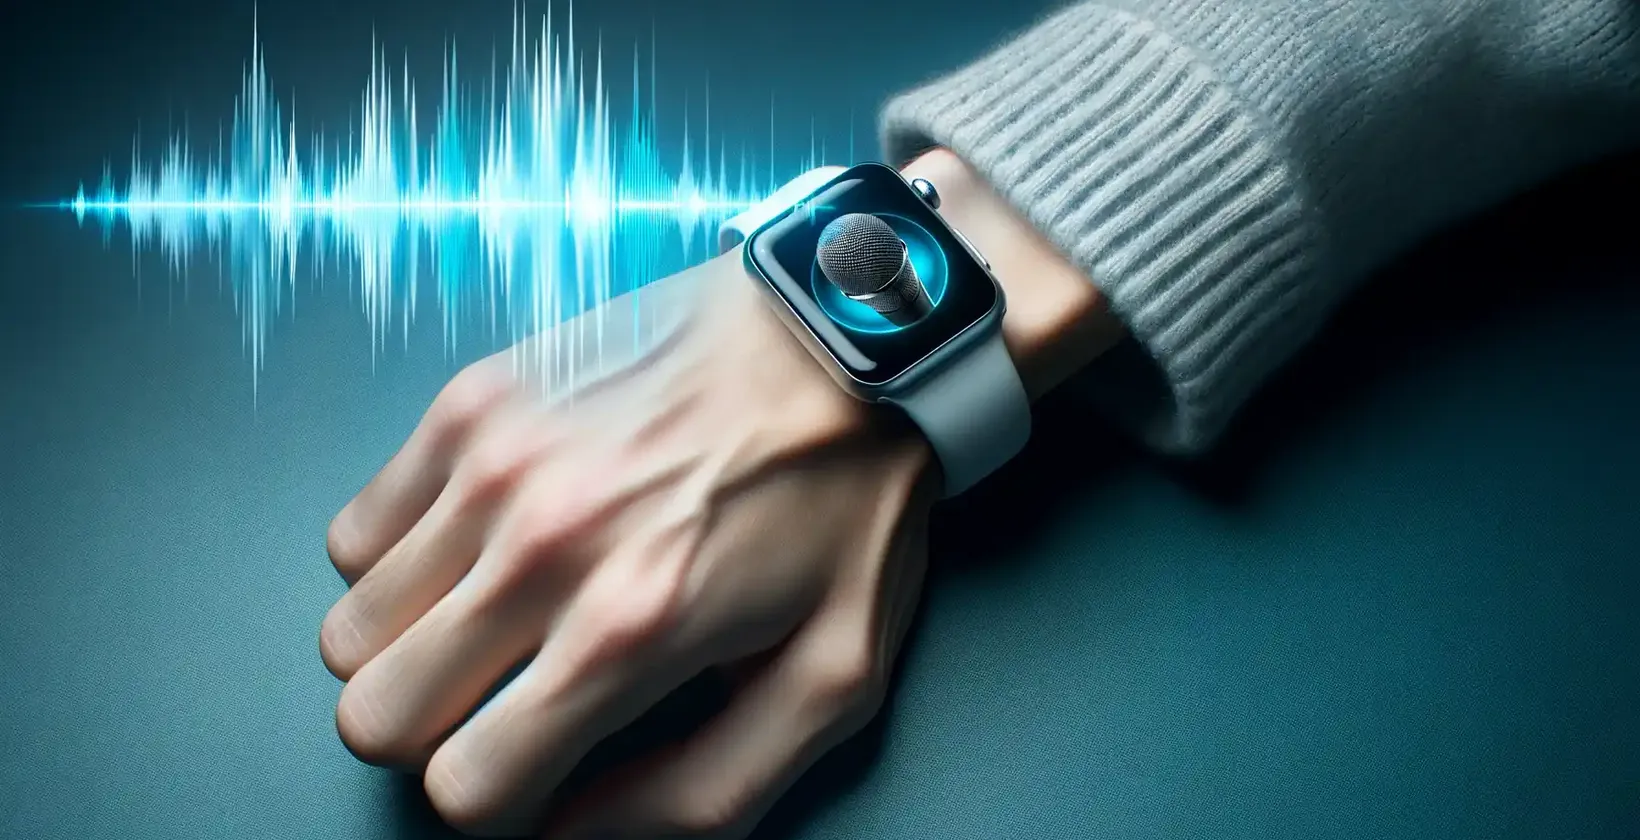 Un prim-plan al încheieturii mâinii unei persoane care poartă un Apple Watch care afișează o pictogramă de microfon, indicând modul dictare.